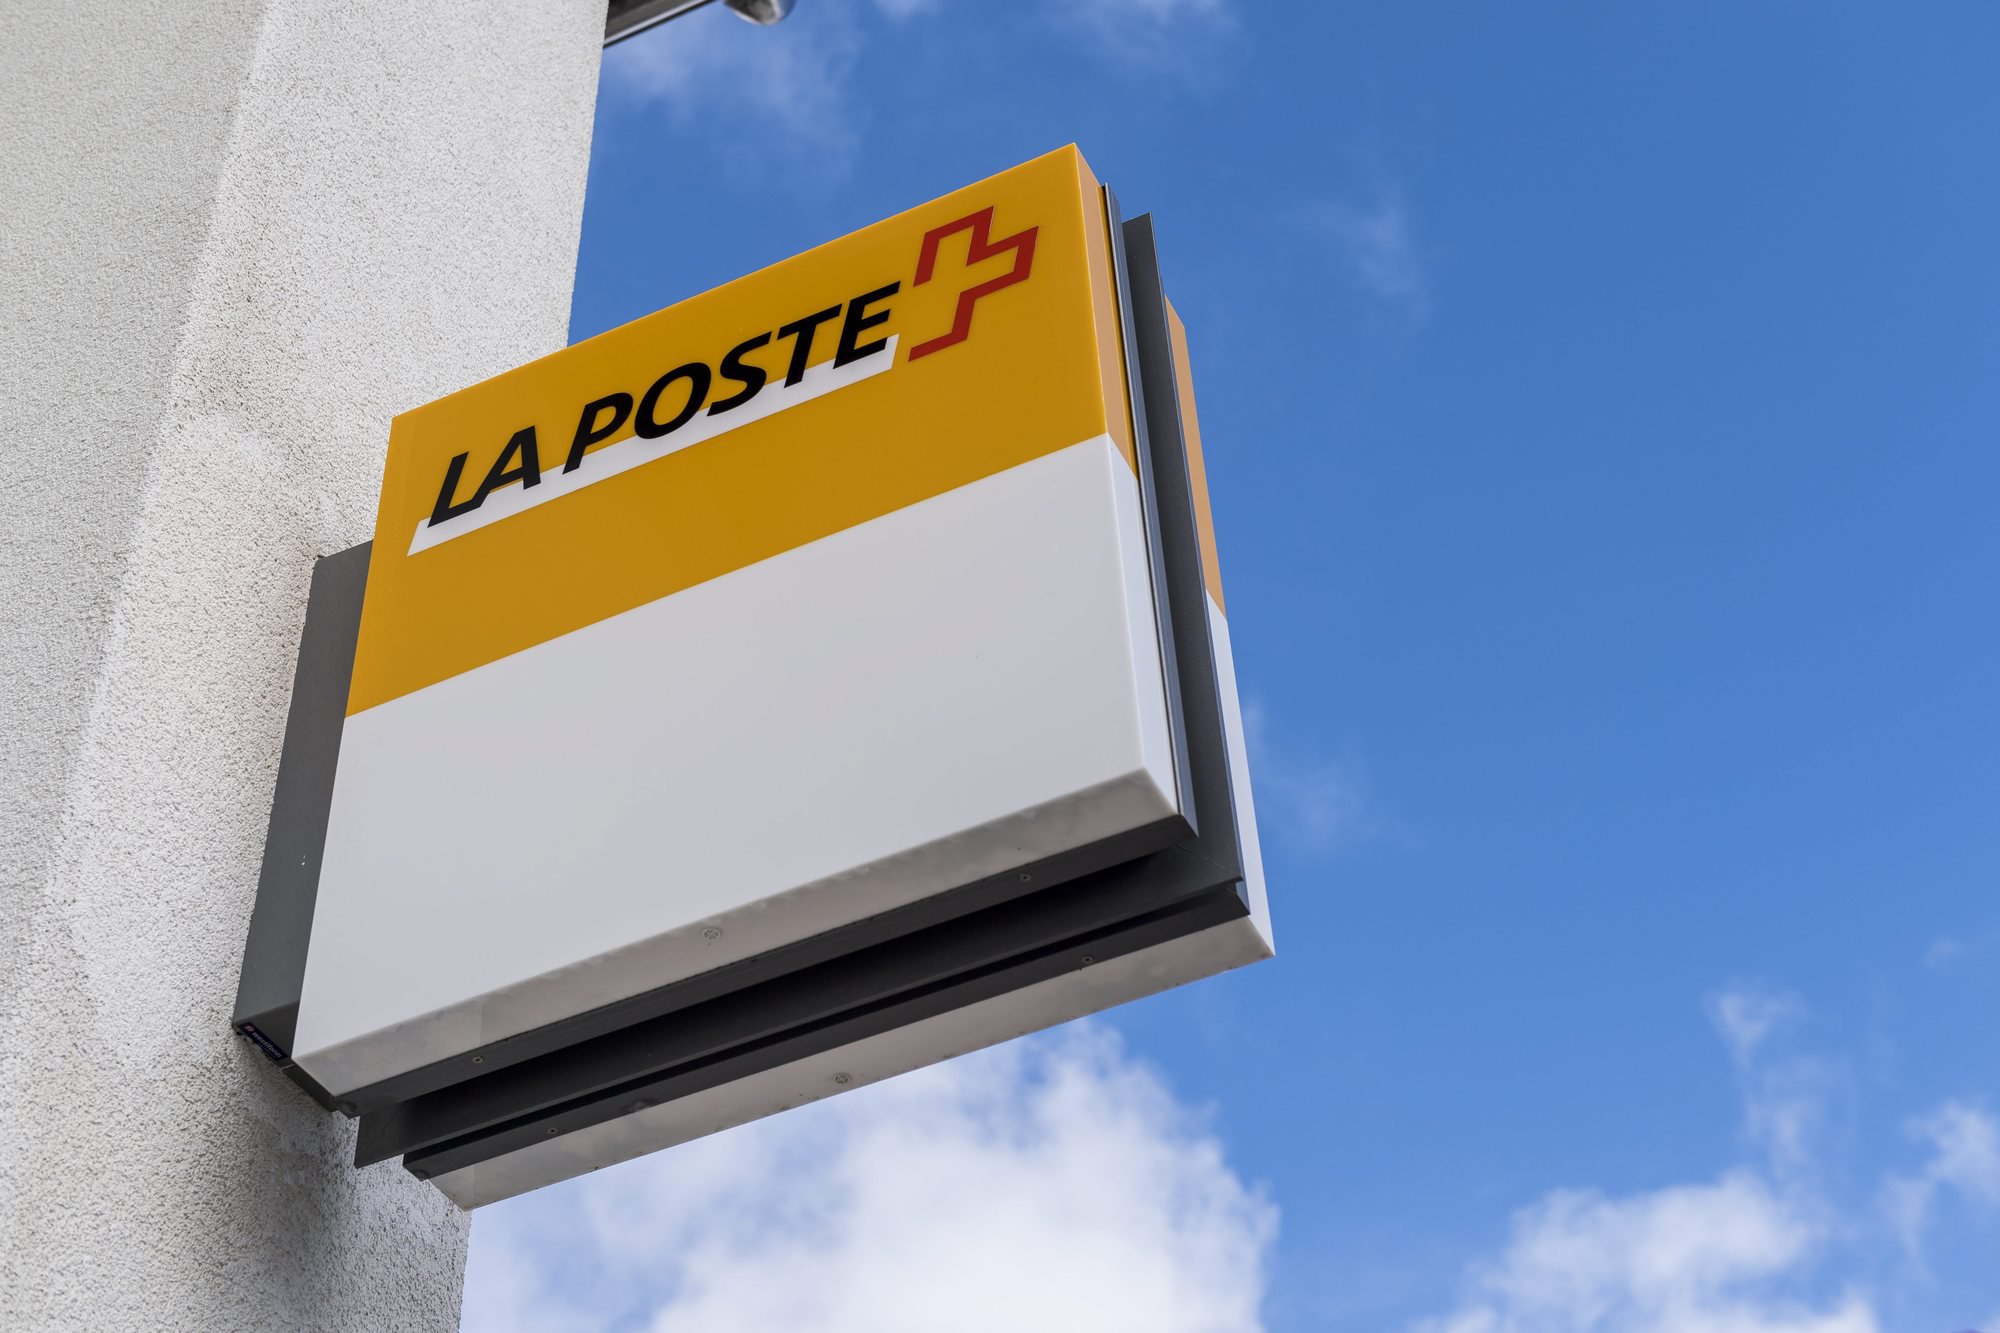 Bureau de La Poste de La Sagne devrait disparaitre.

La Sagne, le 02.03.2017
Photo : Lucas Vuitel